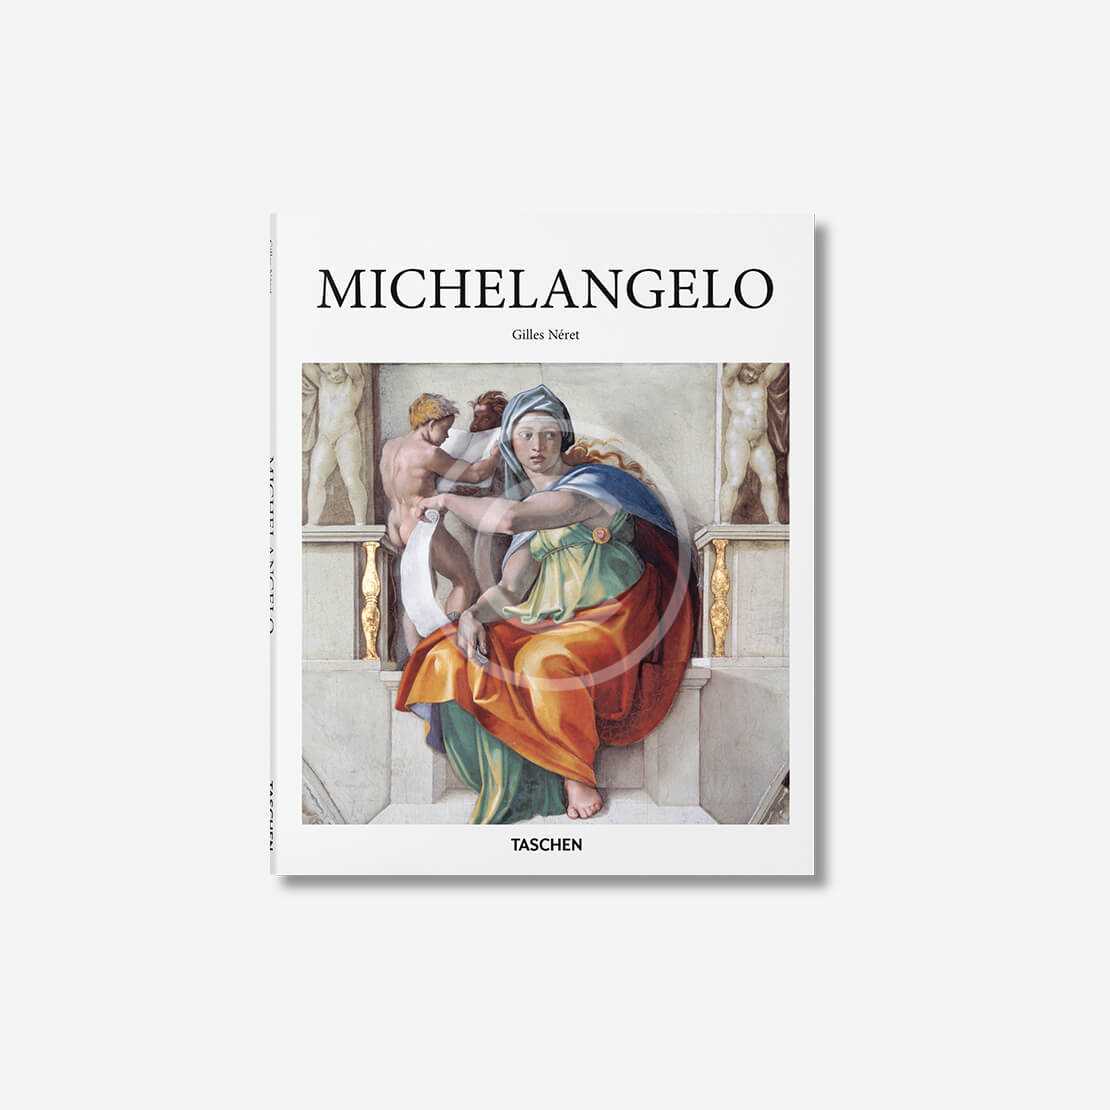 biography of michelangelo book